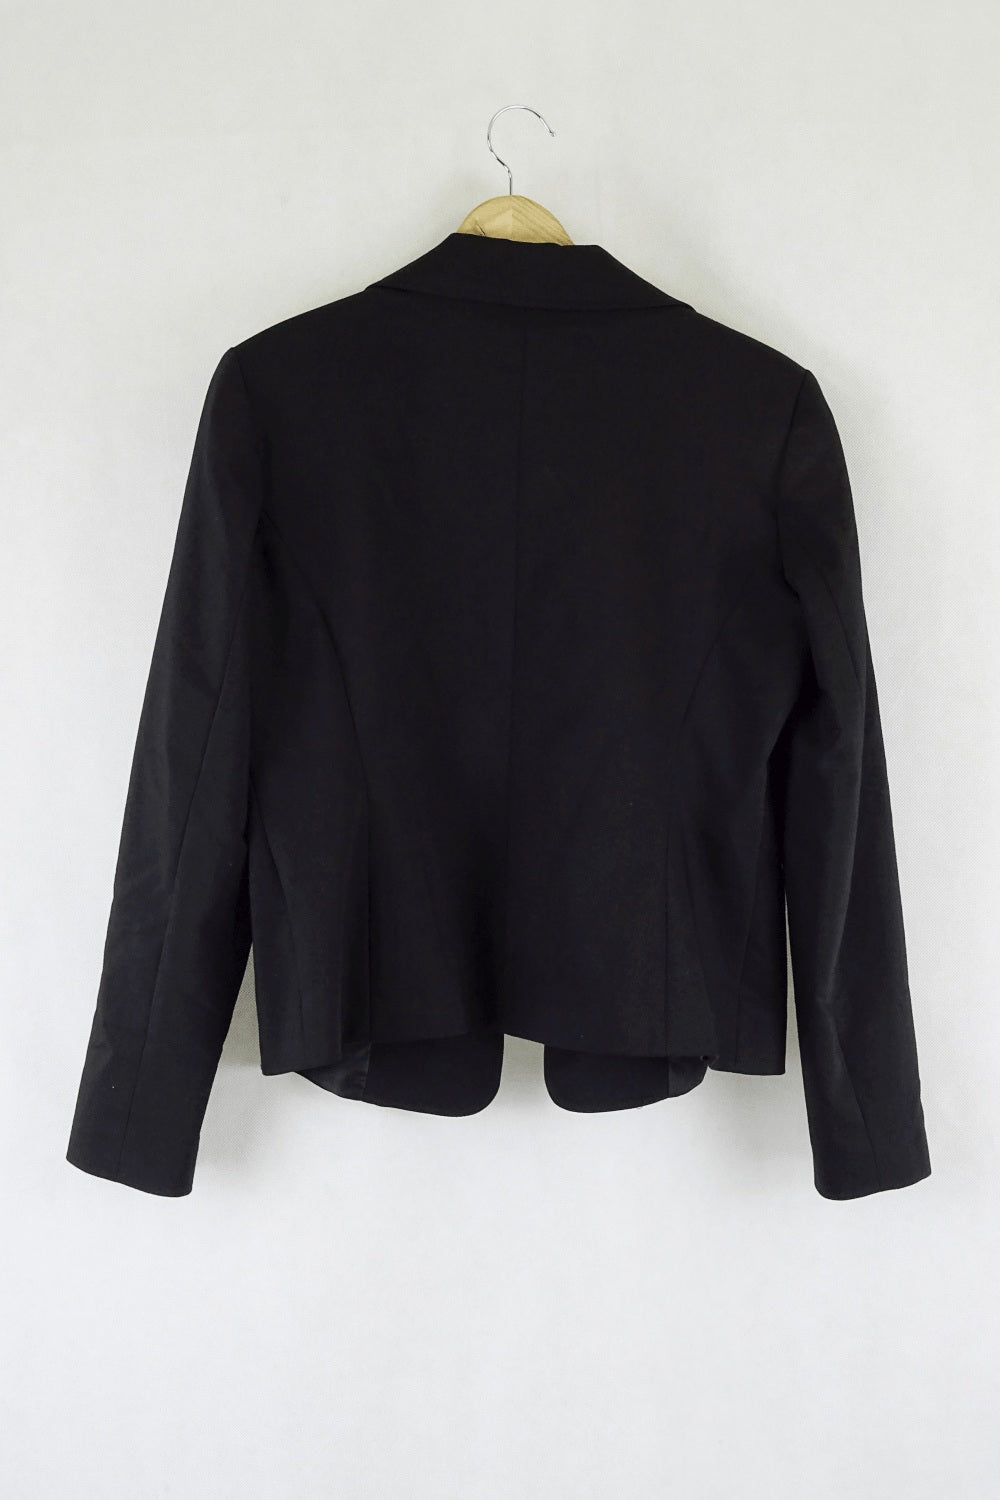 Boutique Black Jacket 10